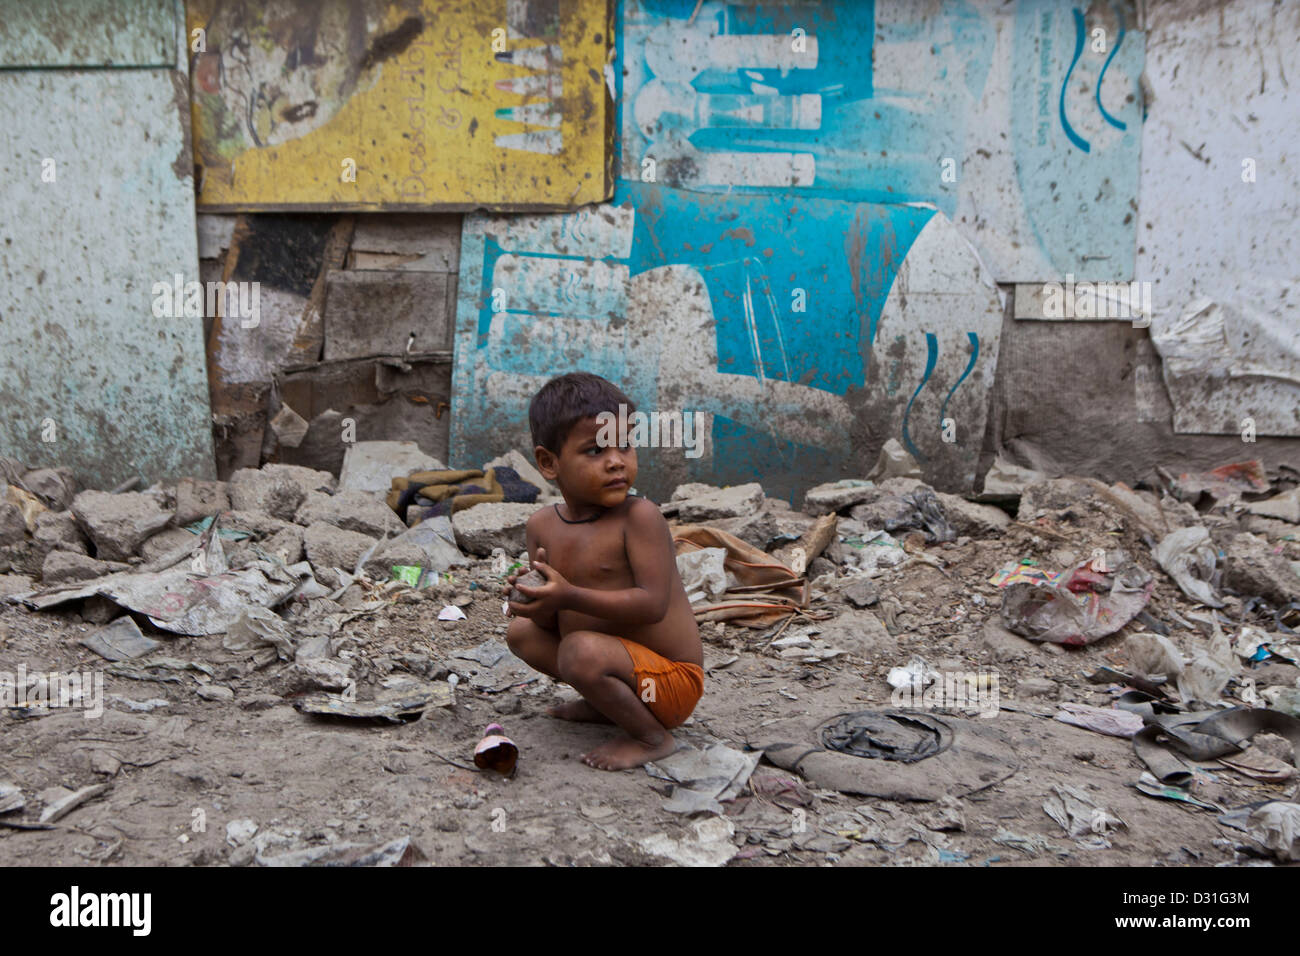 La pauvreté vivant dans Tehkhand Slum, Delhi, Inde. Petit enfant vivant parmi les débris et saletés de la saleté. Banque D'Images